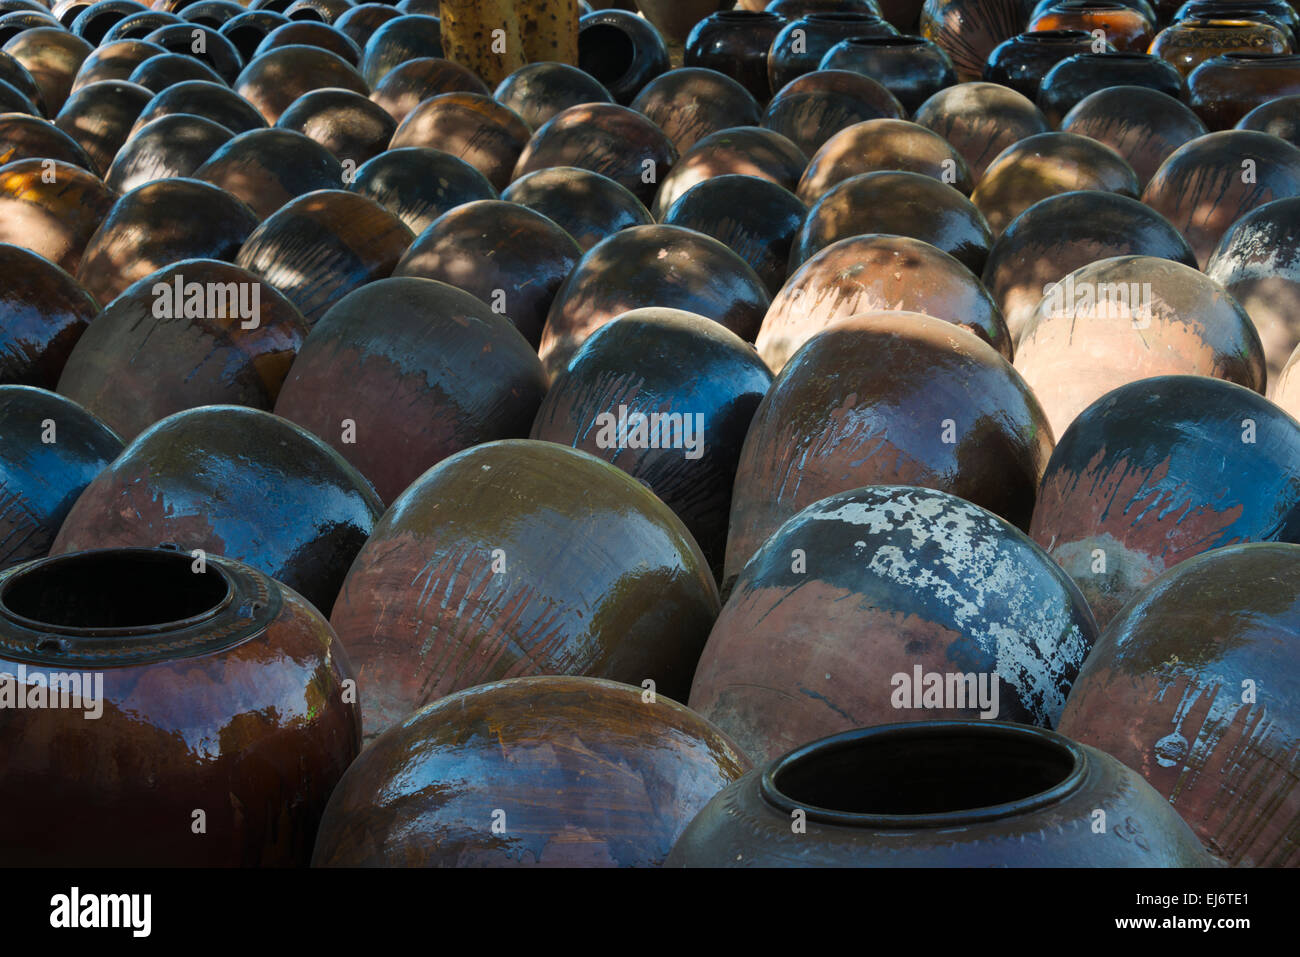 Pots de céramique, Bagan, Mandalay, Myanmar Région Banque D'Images